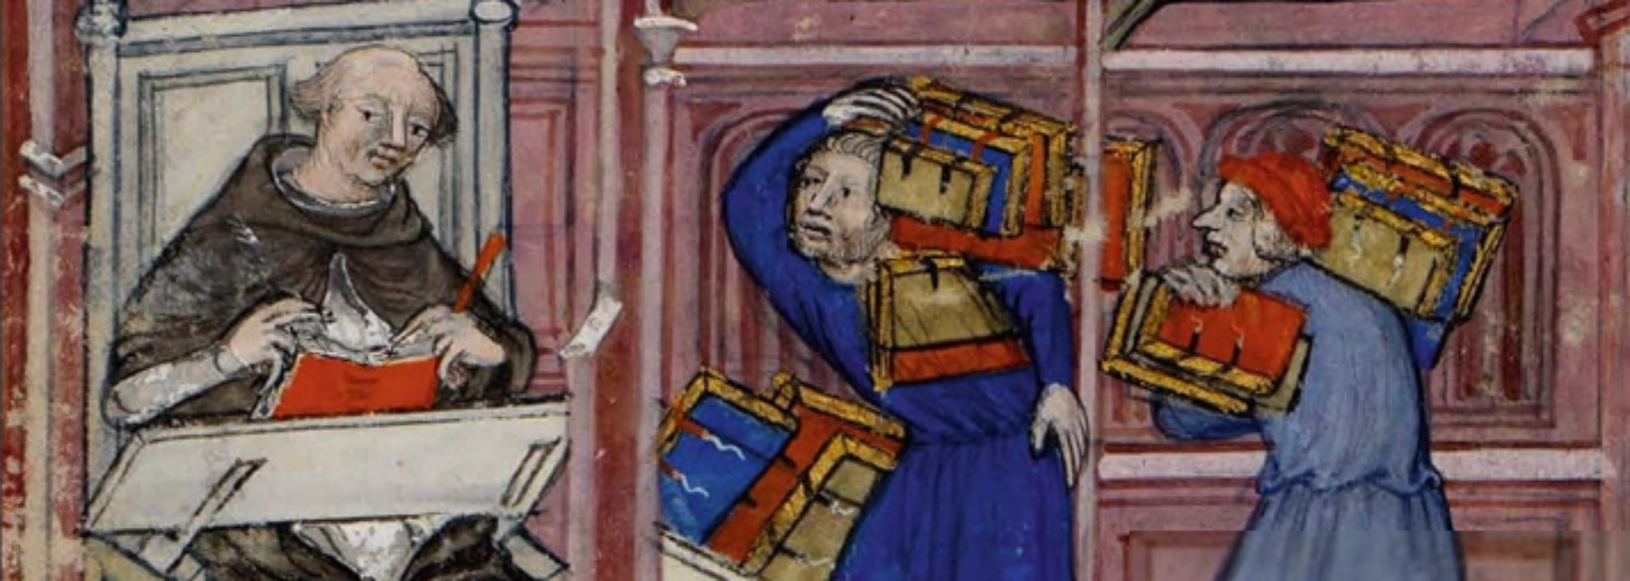 Ein Gelehrter - Vinzenz von Beauvais - sitzt an seinem Pult und liest, zwei Mitarbeiter schleppen Bücher heran.